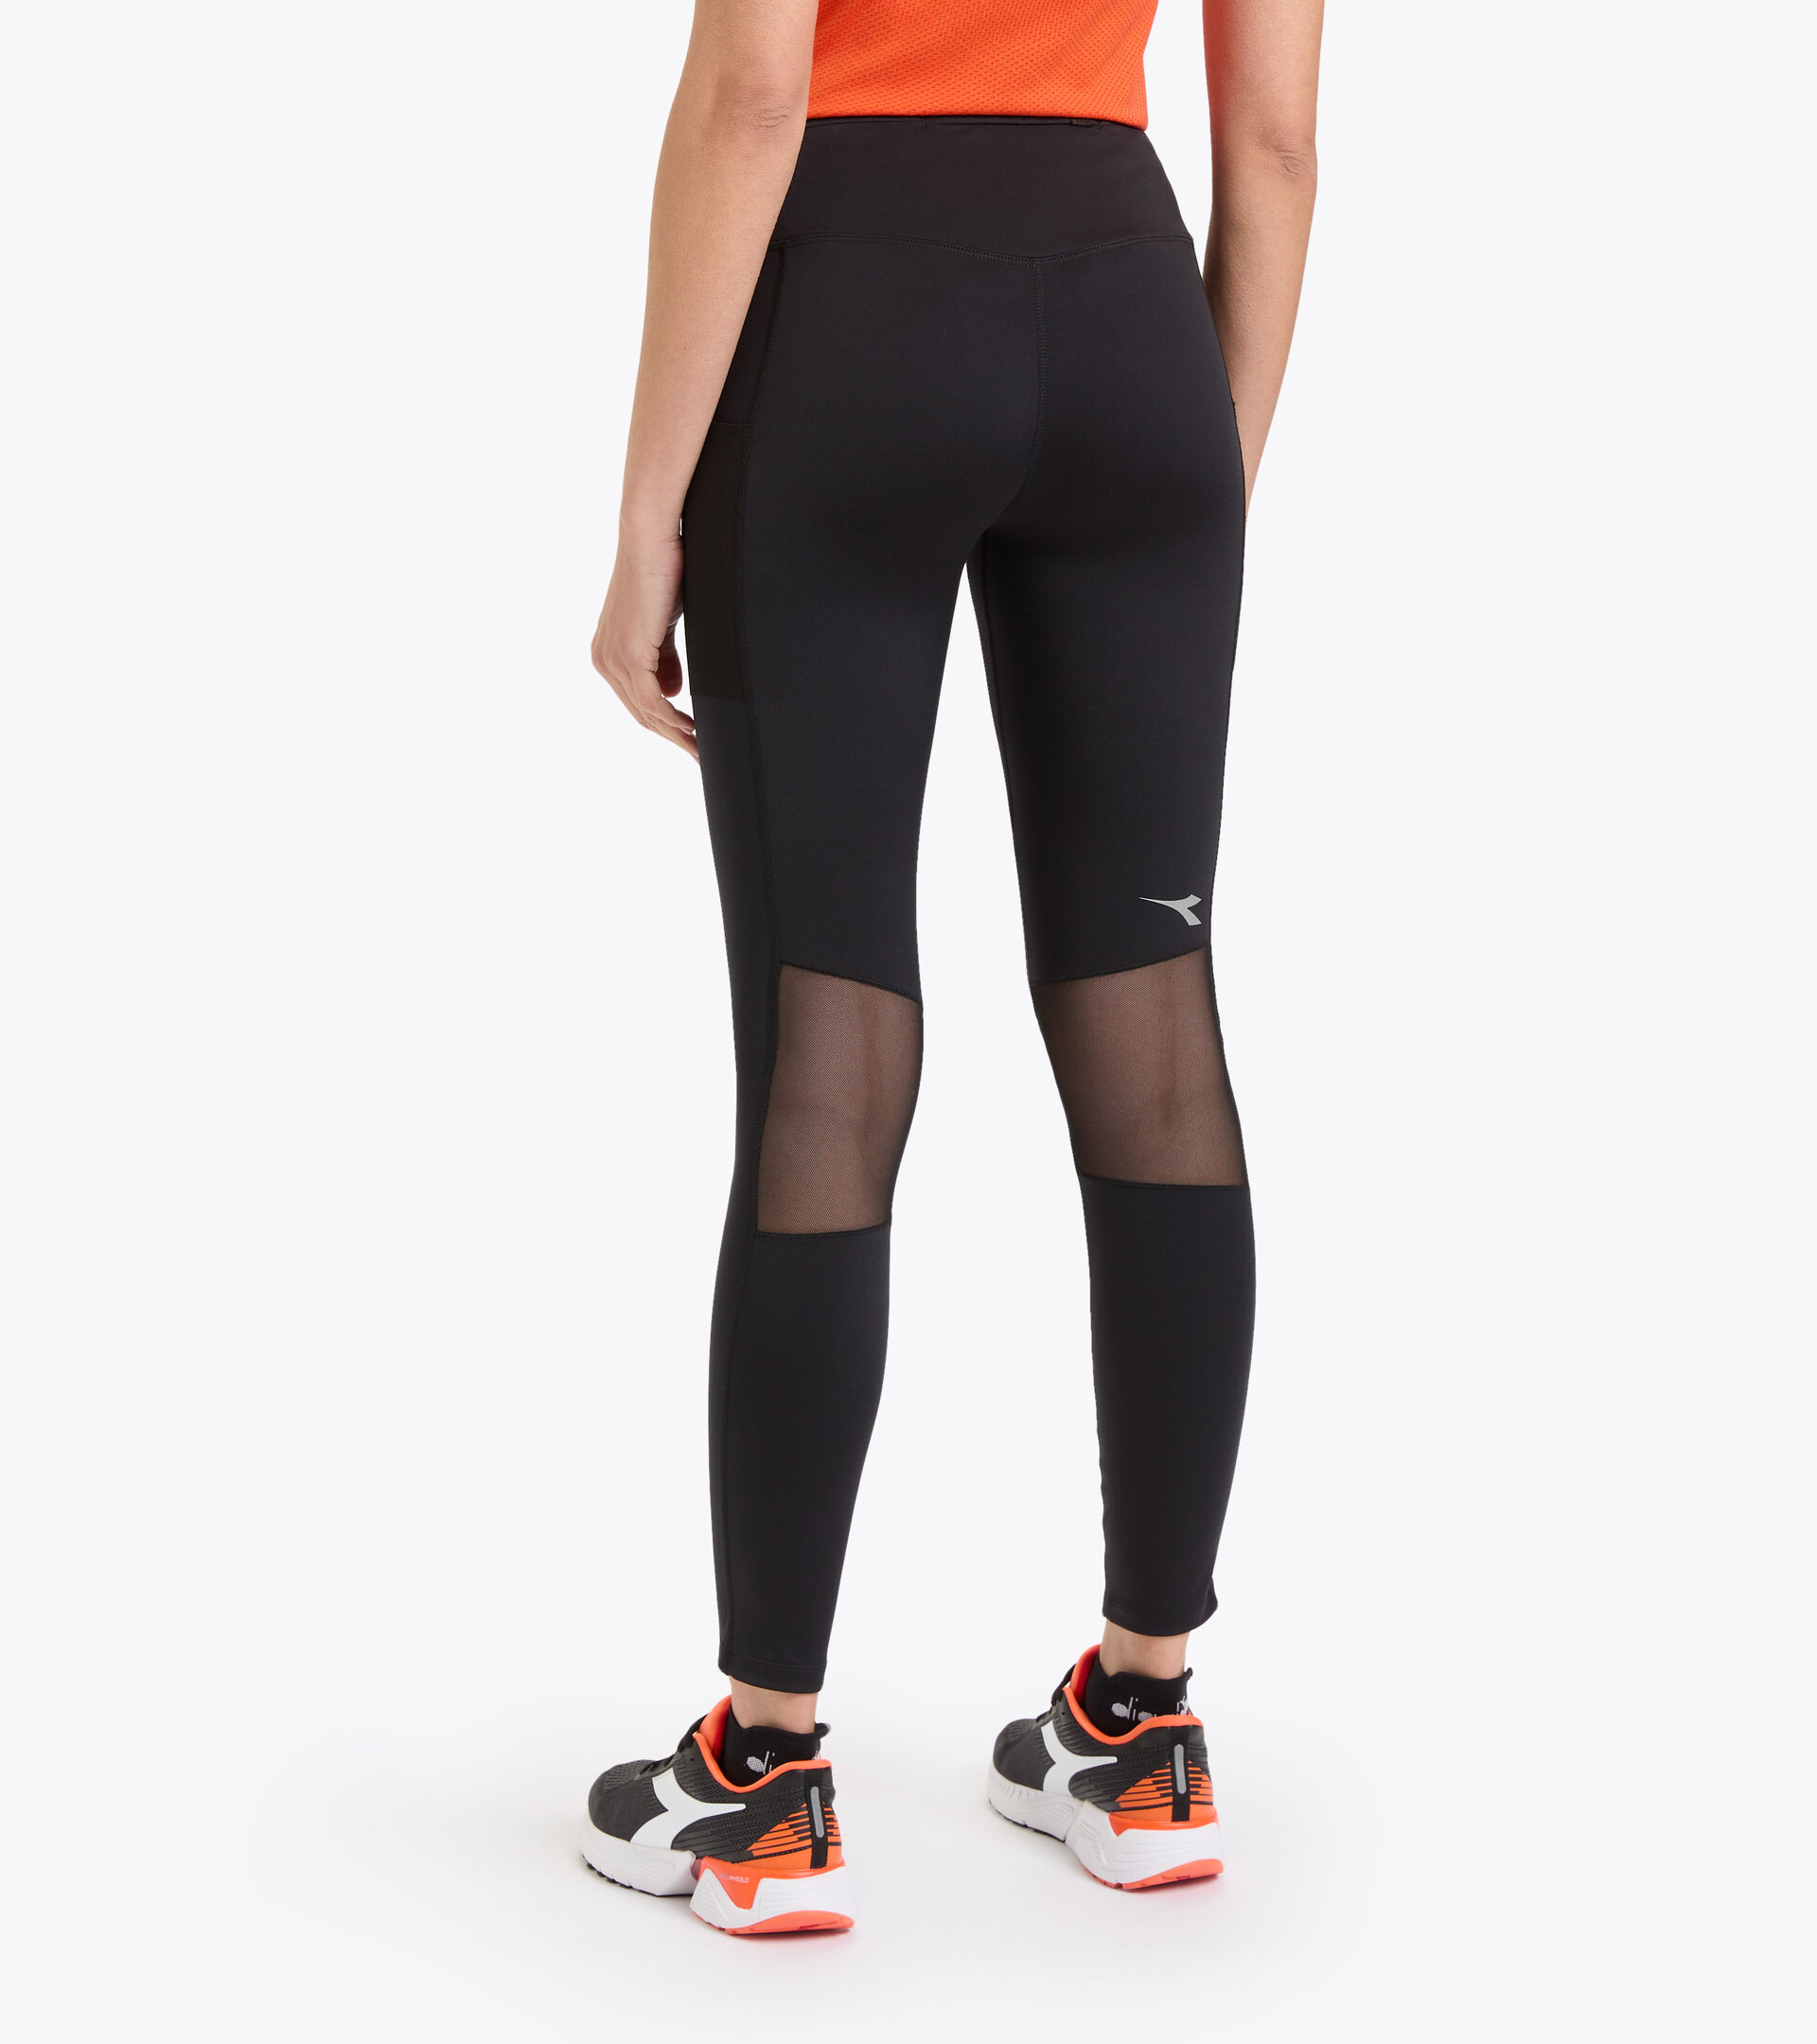 WINTER RUNNING TIGHTS BE ONE Running leggings - Men - Diadora Online Store  CA